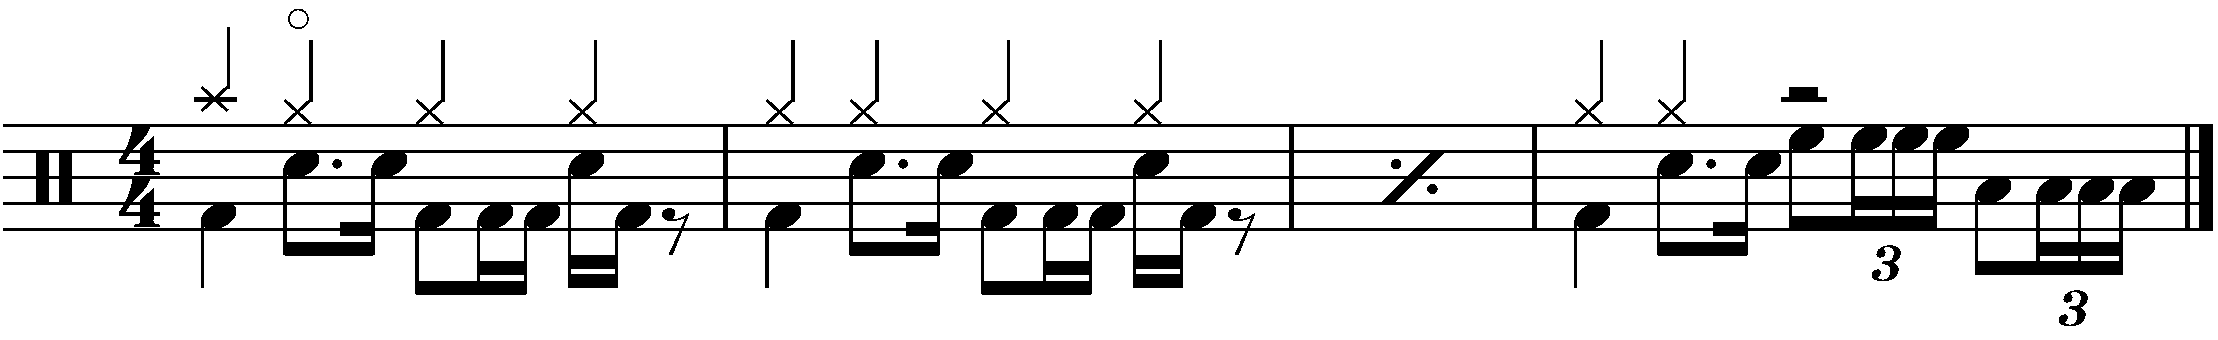 A four bar phrased using a half bar four stroke roll fill